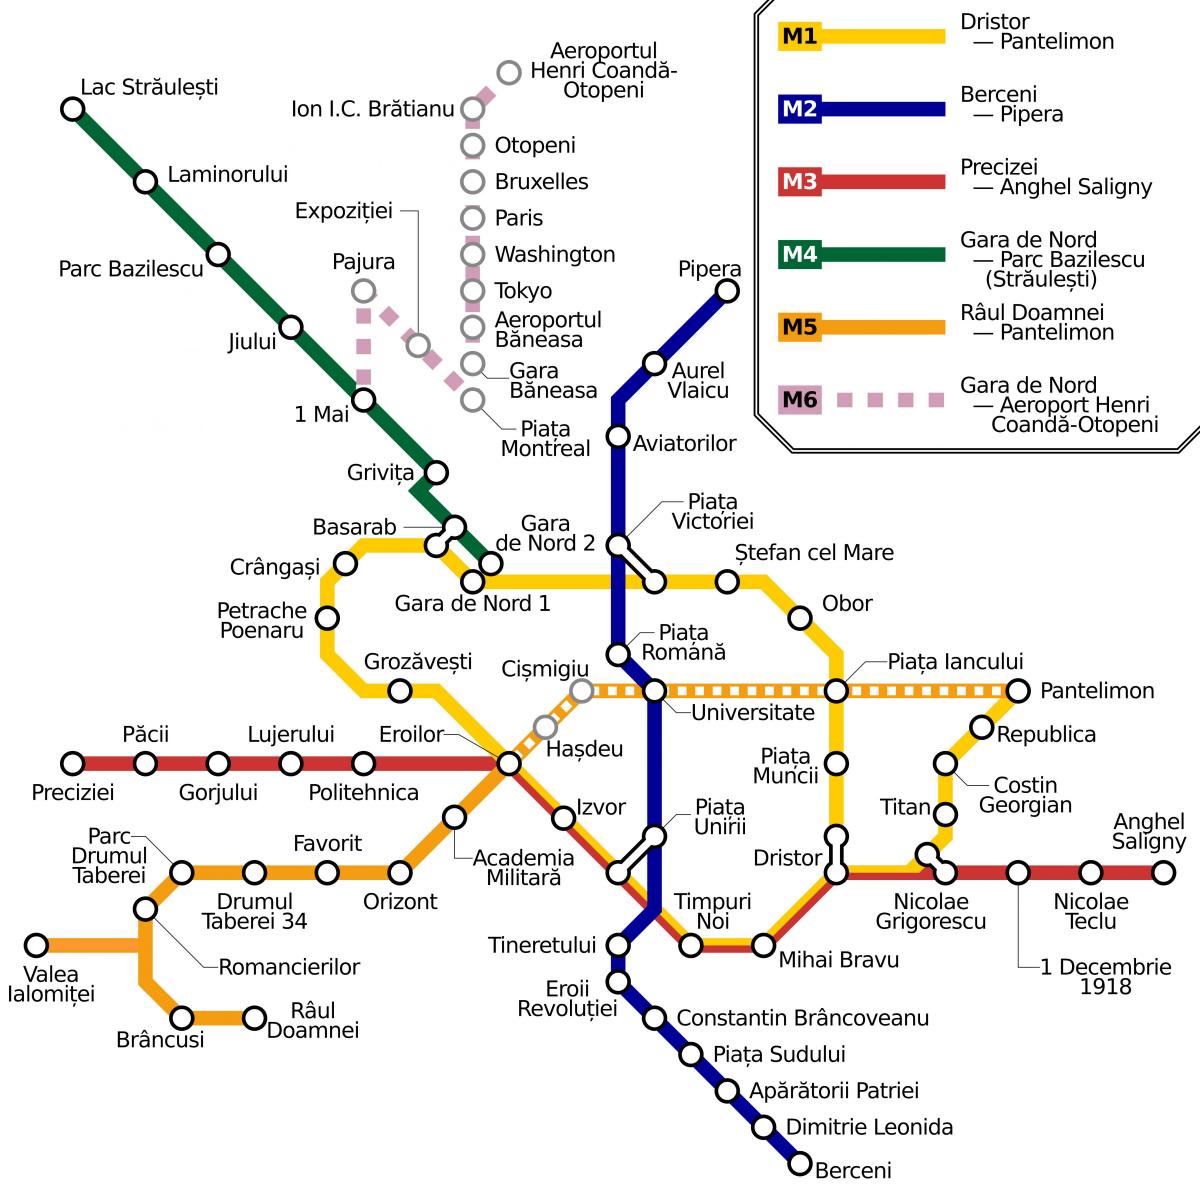 ブカレストの地下鉄駅マップ